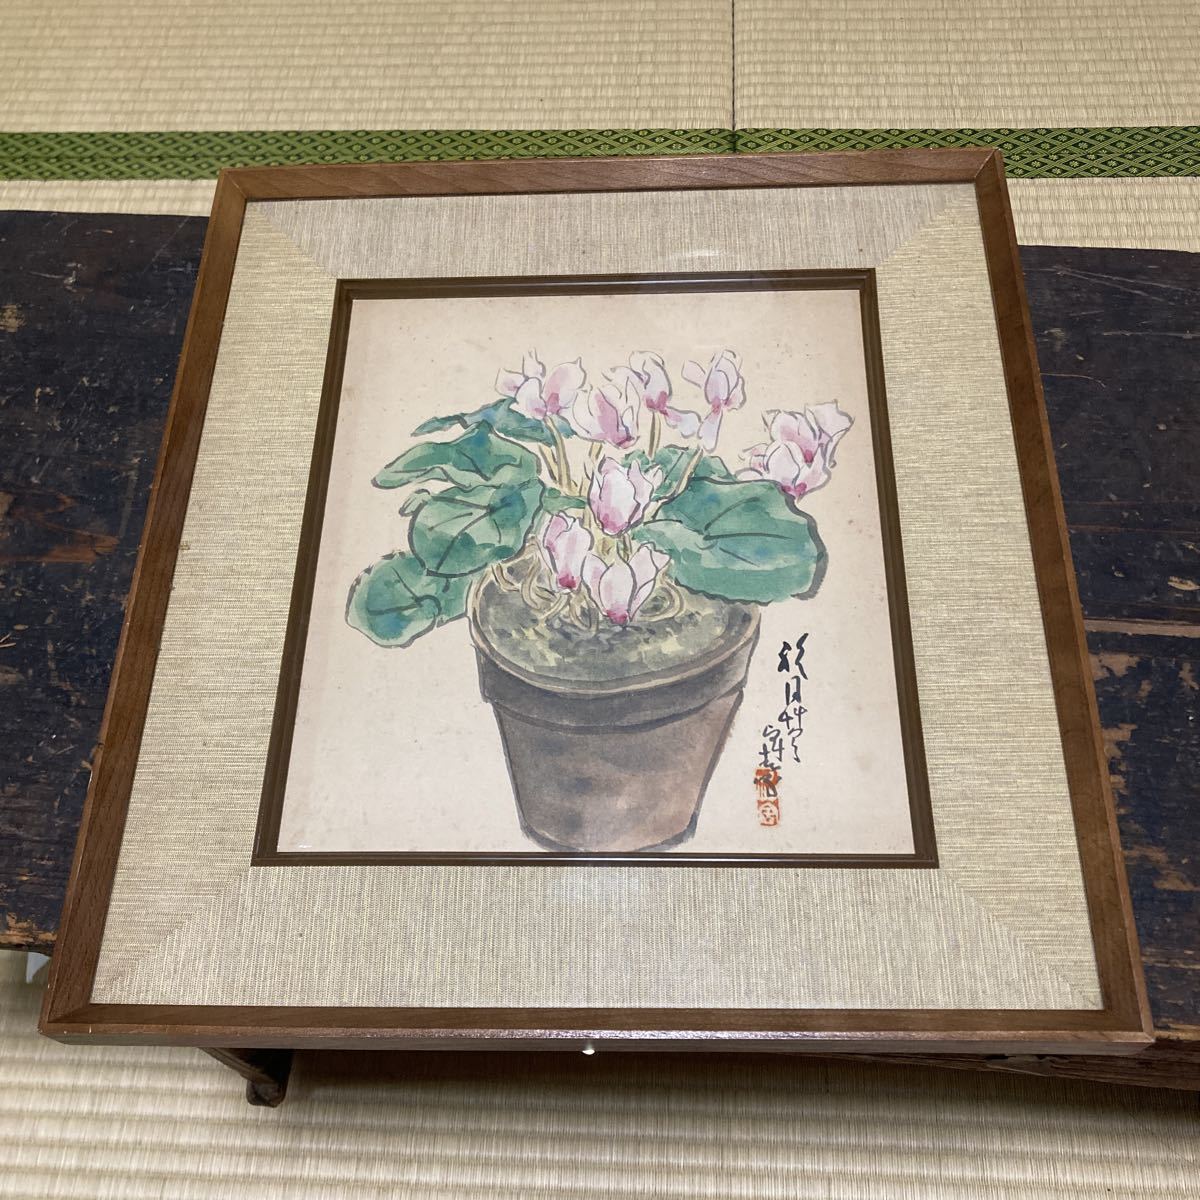 تفاصيل غير معروفة لوحة يابانية مكتوبة بخط اليد وموقعة على شكل زهرة إطار اللوحة مقاس 40 سم × 36.5 سم مجموعة اللوحات القديمة عنصر منظم, تلوين, اللوحة اليابانية, الزهور والطيور, الطيور والوحوش